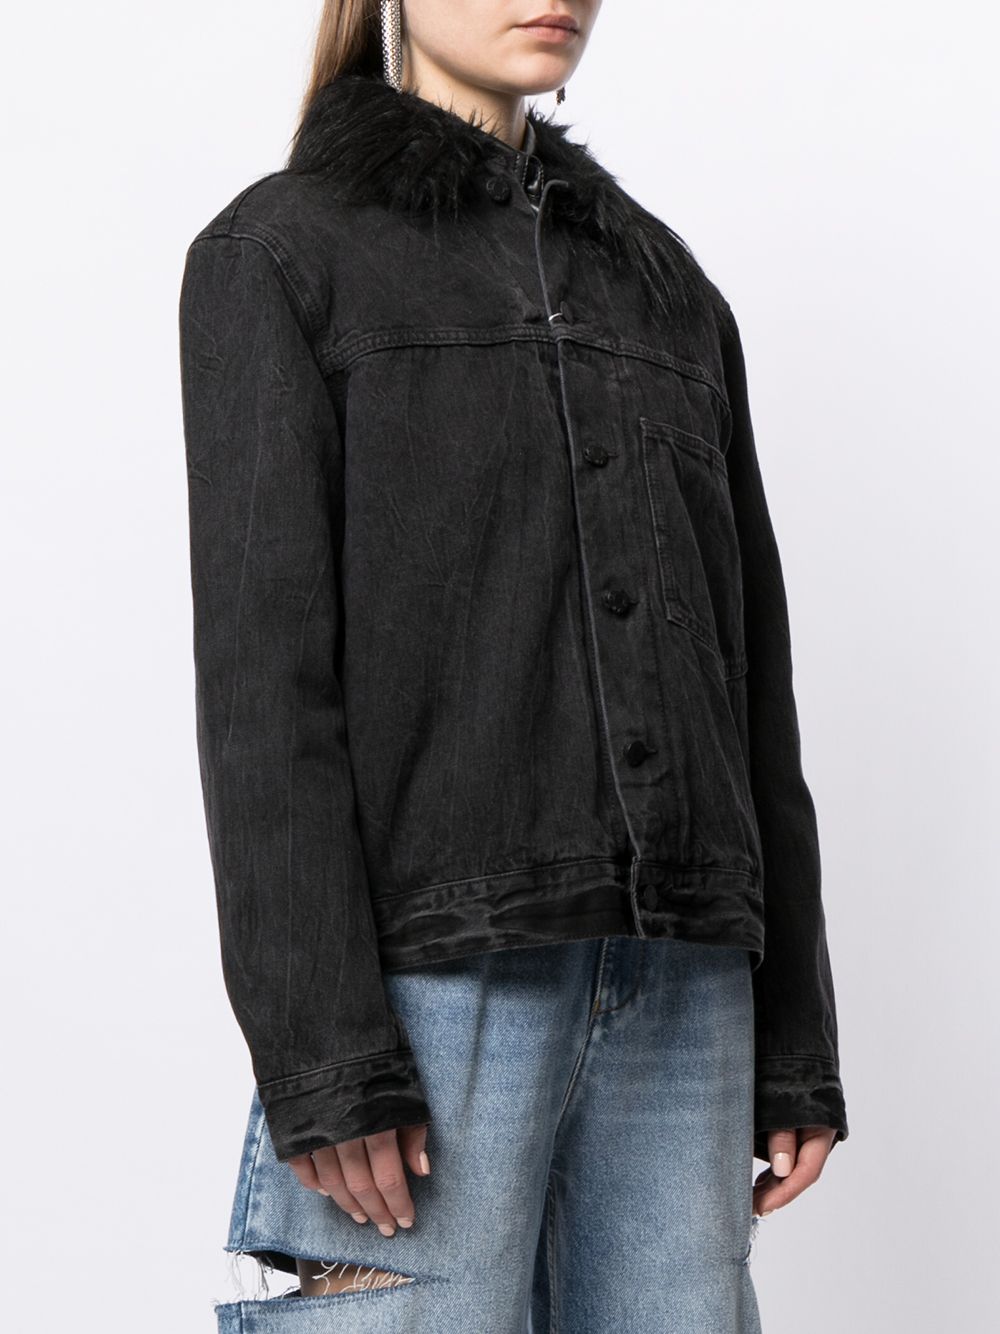 фото Helmut lang pre-owned джинсовая куртка с искусственным мехом